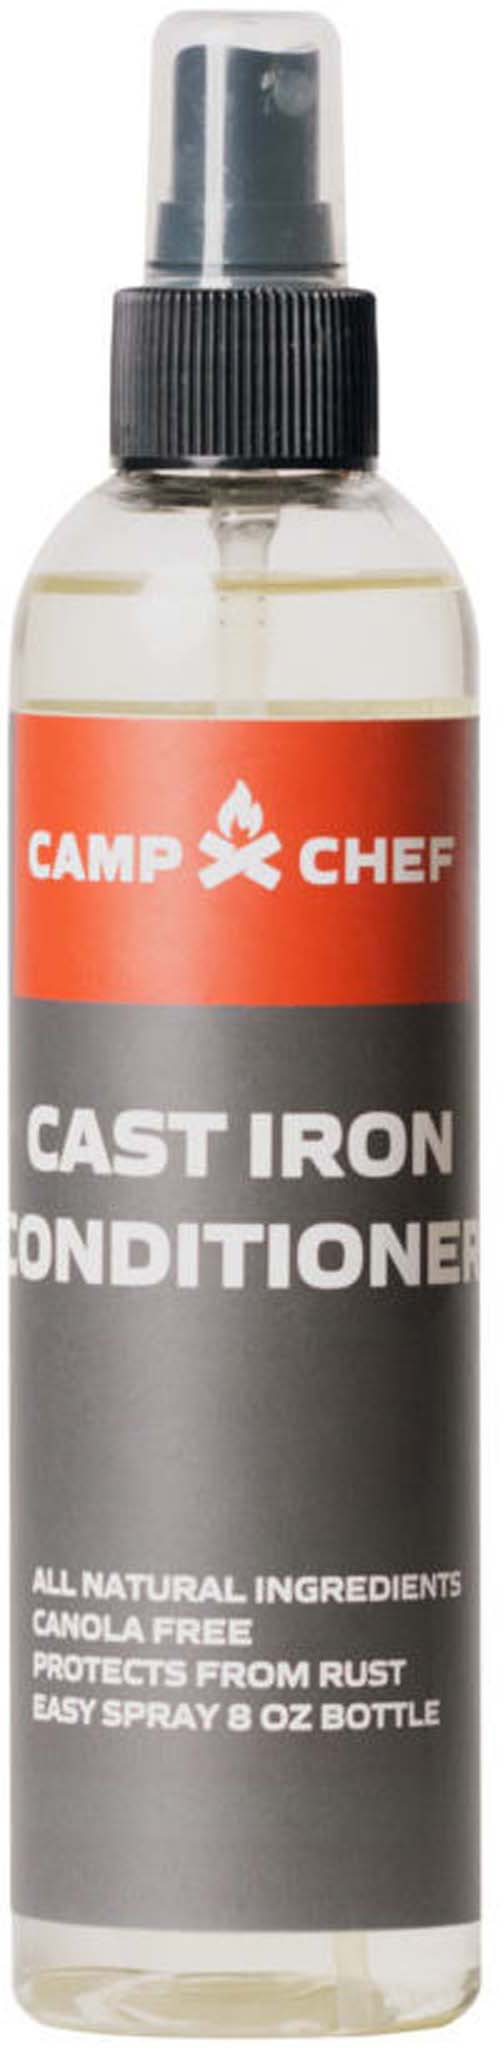 Camp Chef Premium Cast Iron Conditioner Spray